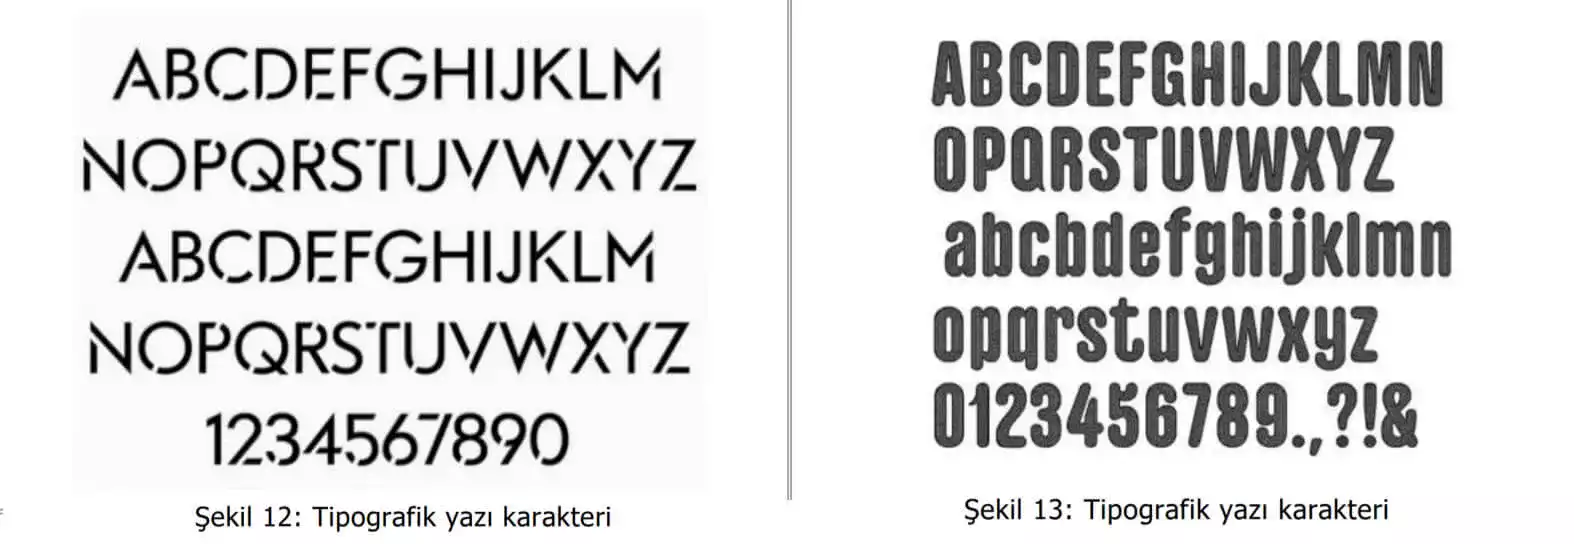 tipografik yazı karakter örnekleri-beyoglu patent